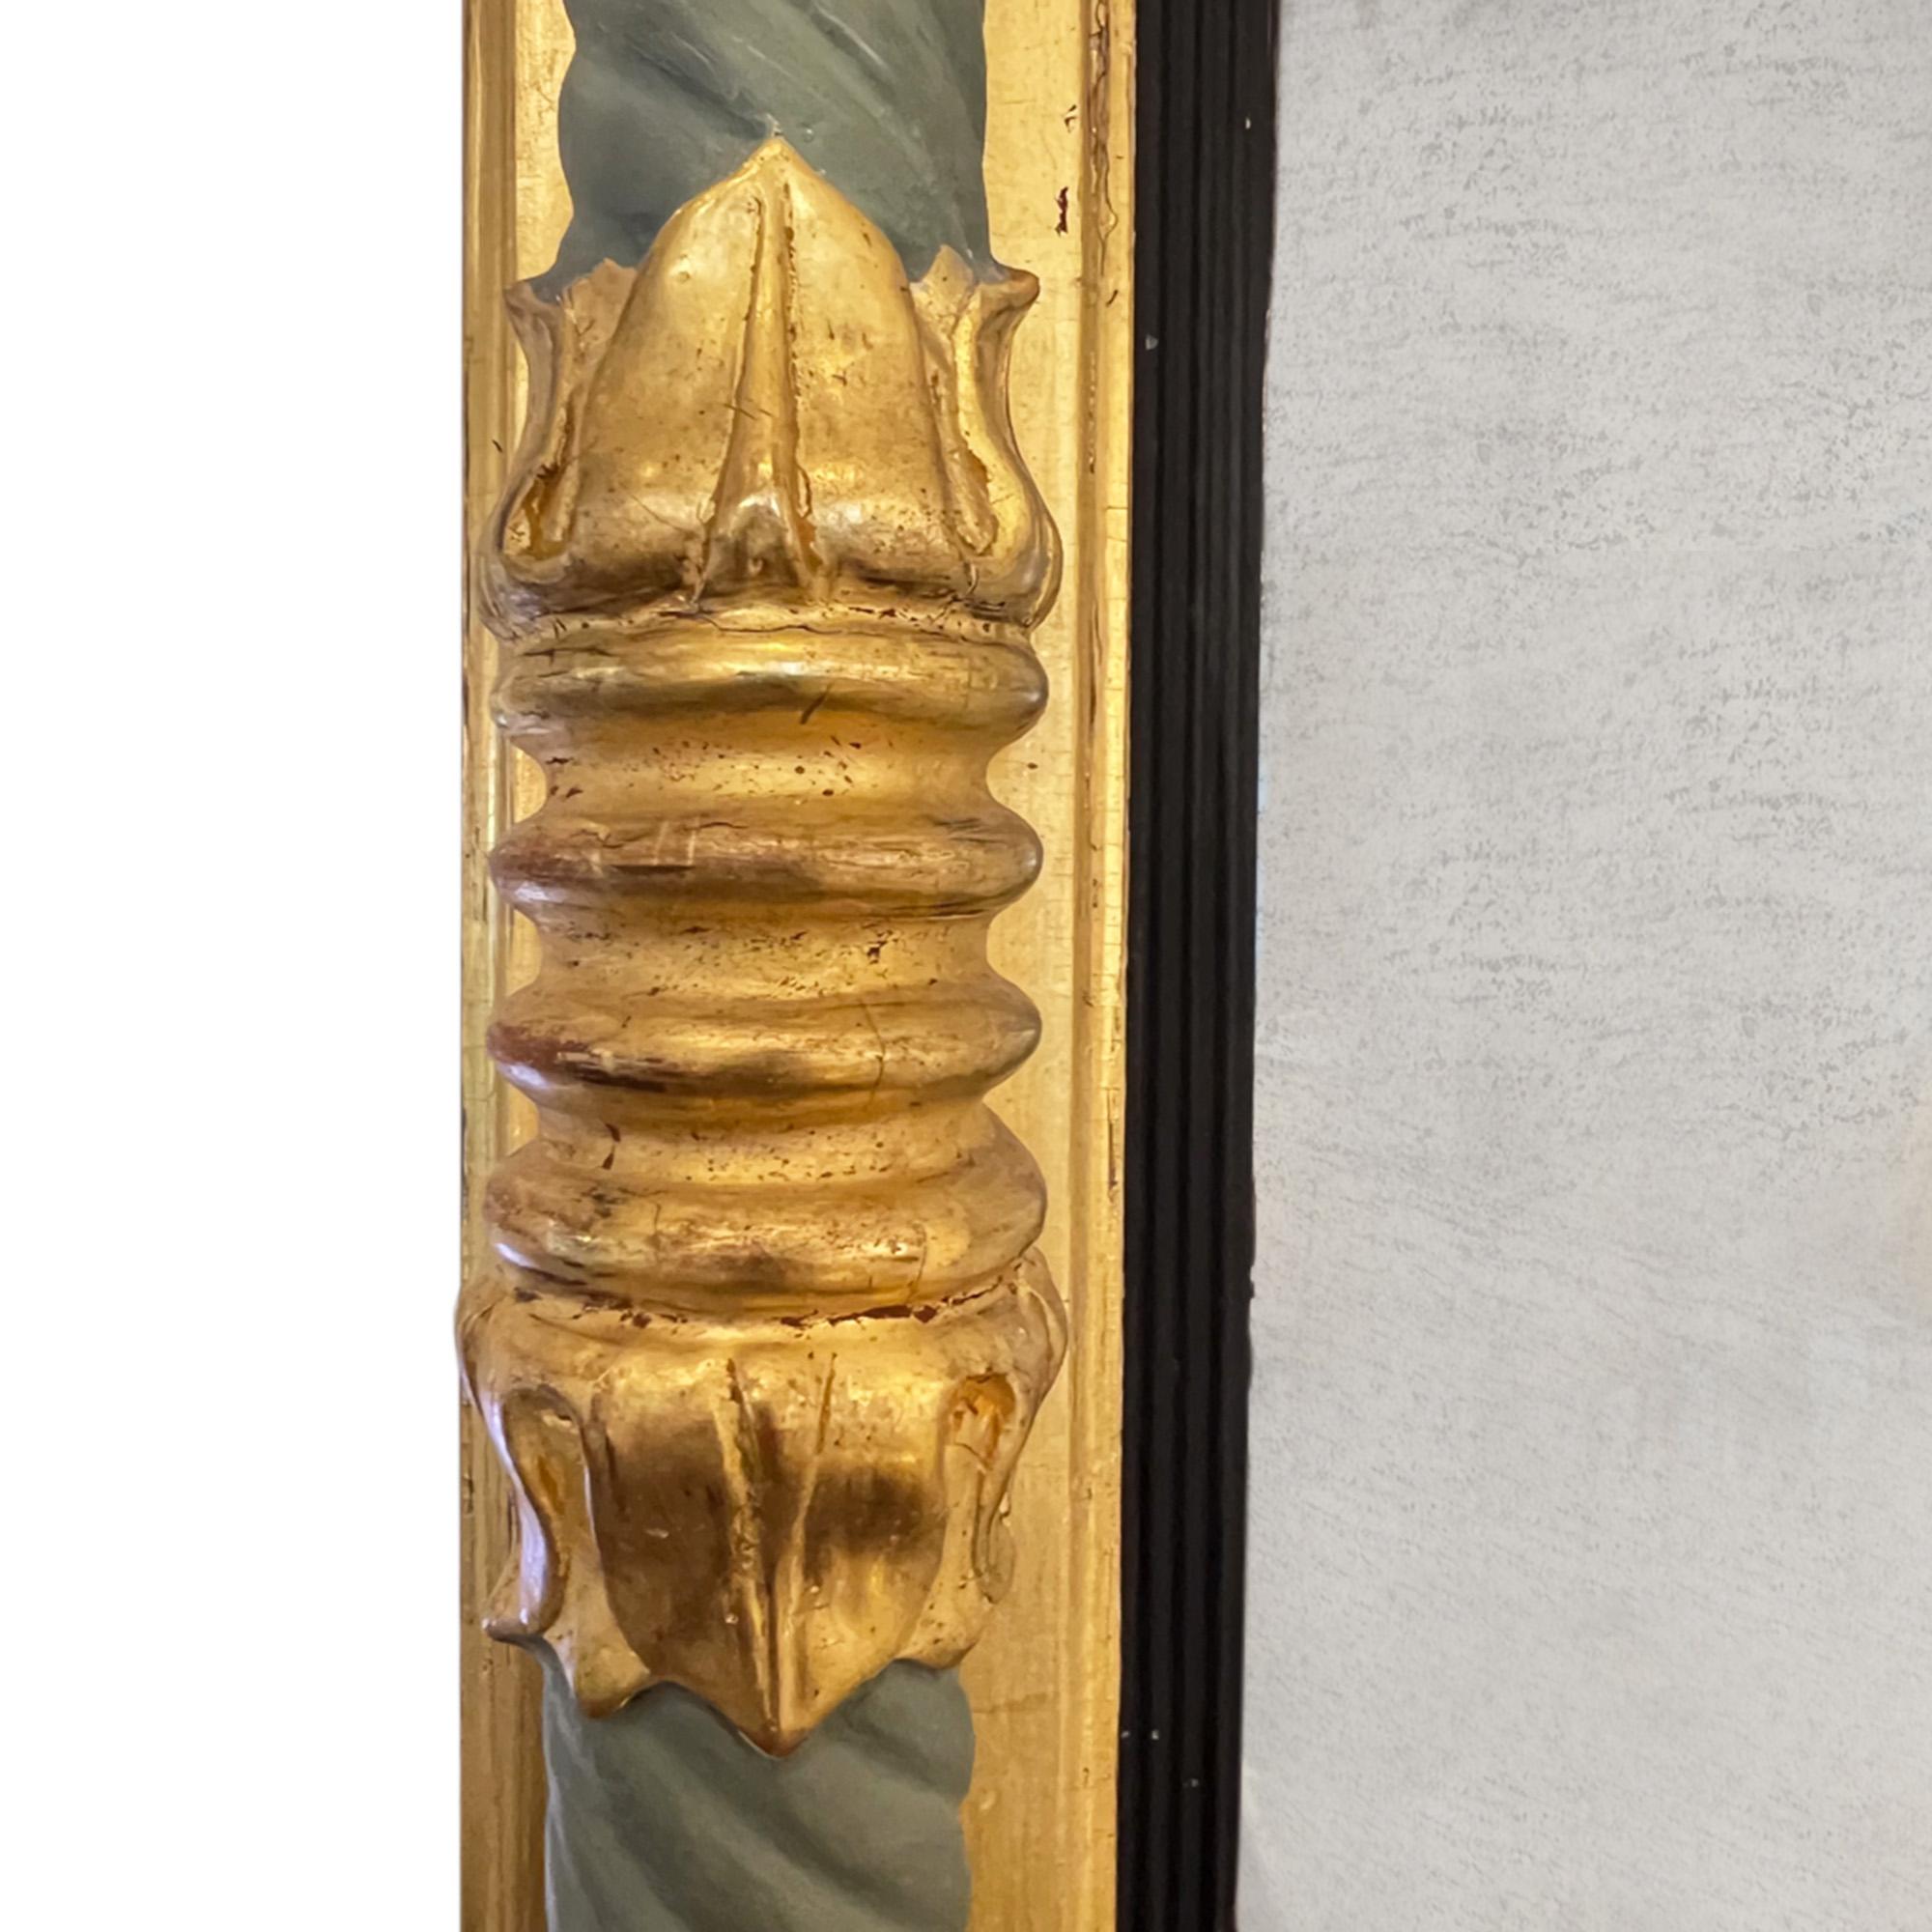 Dieser große Spiegel aus vergoldetem Holz wurde im 19. Jahrhundert in Schweden hergestellt. 

Wunderschöne Details, schön geschnitzt, ohne zu pingelig zu sein. Die aufgefrischte grüne Farbe passt gut zum Goldholz und die originale Spiegelplatte ist